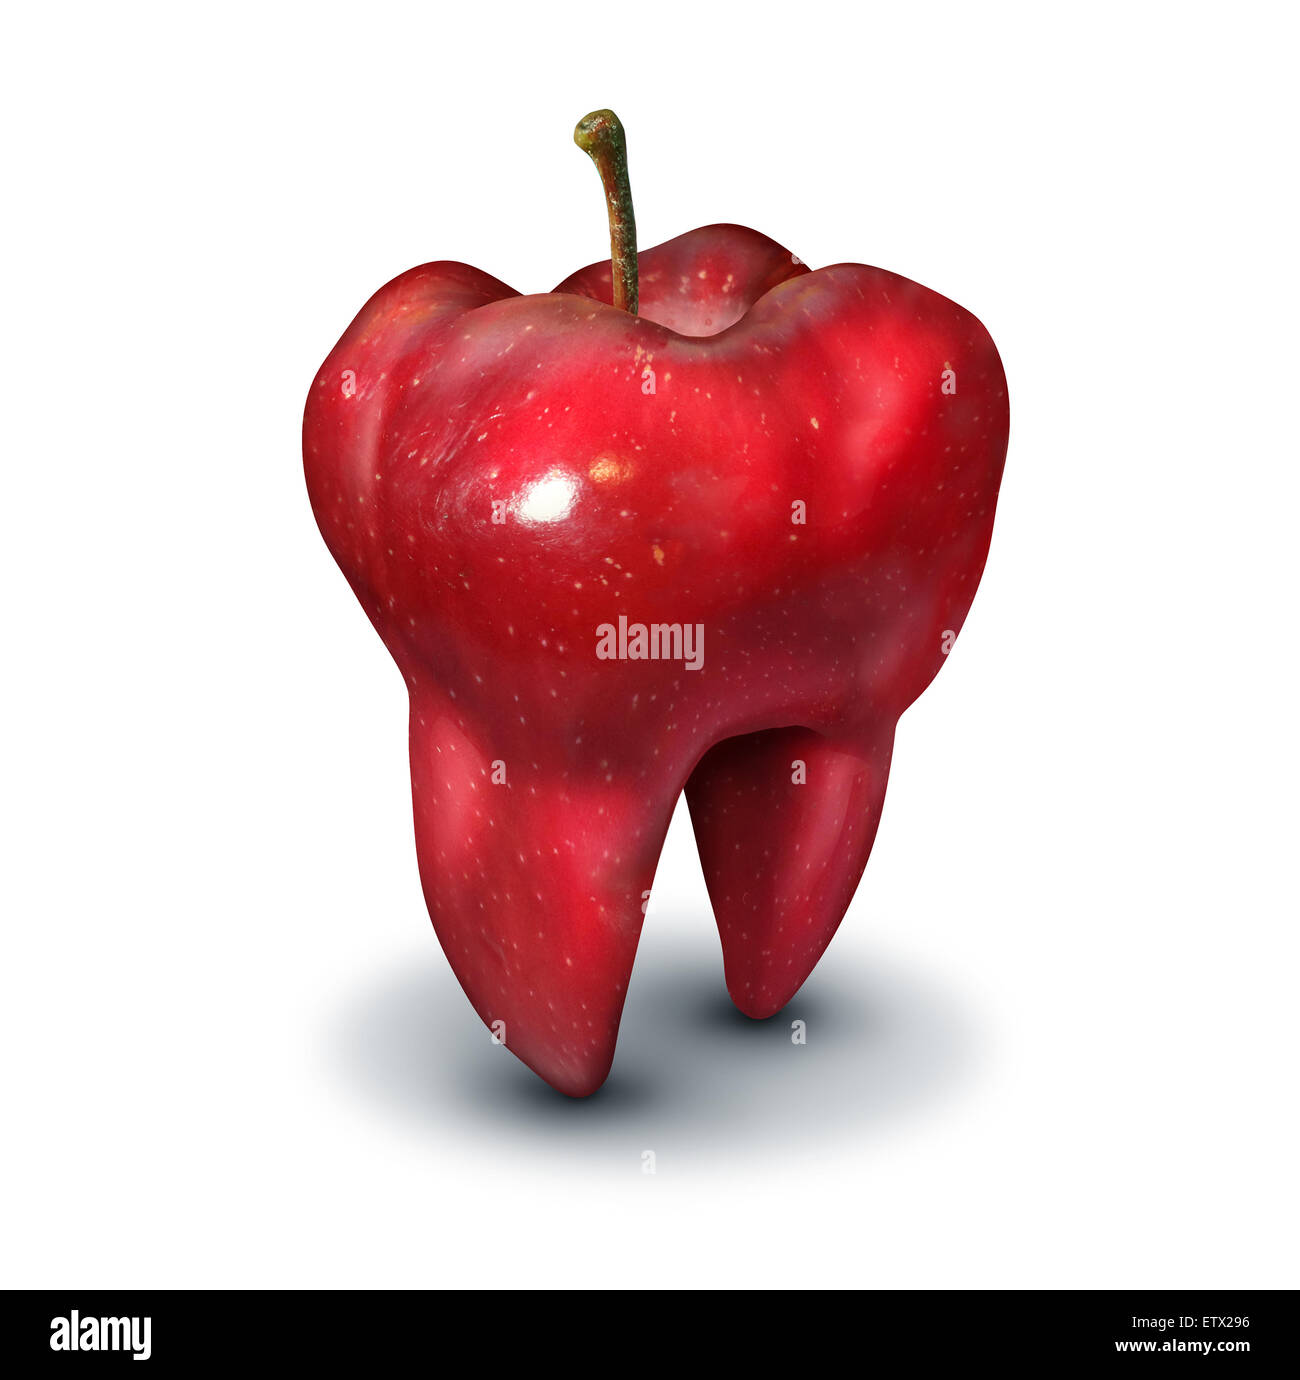 Le concept de la santé de la dent d'Apple comme un fruit rouge en forme d'une molaire et symbole de dents humaines Santé et hygiène bucco-dentaire ou d'icon Banque D'Images